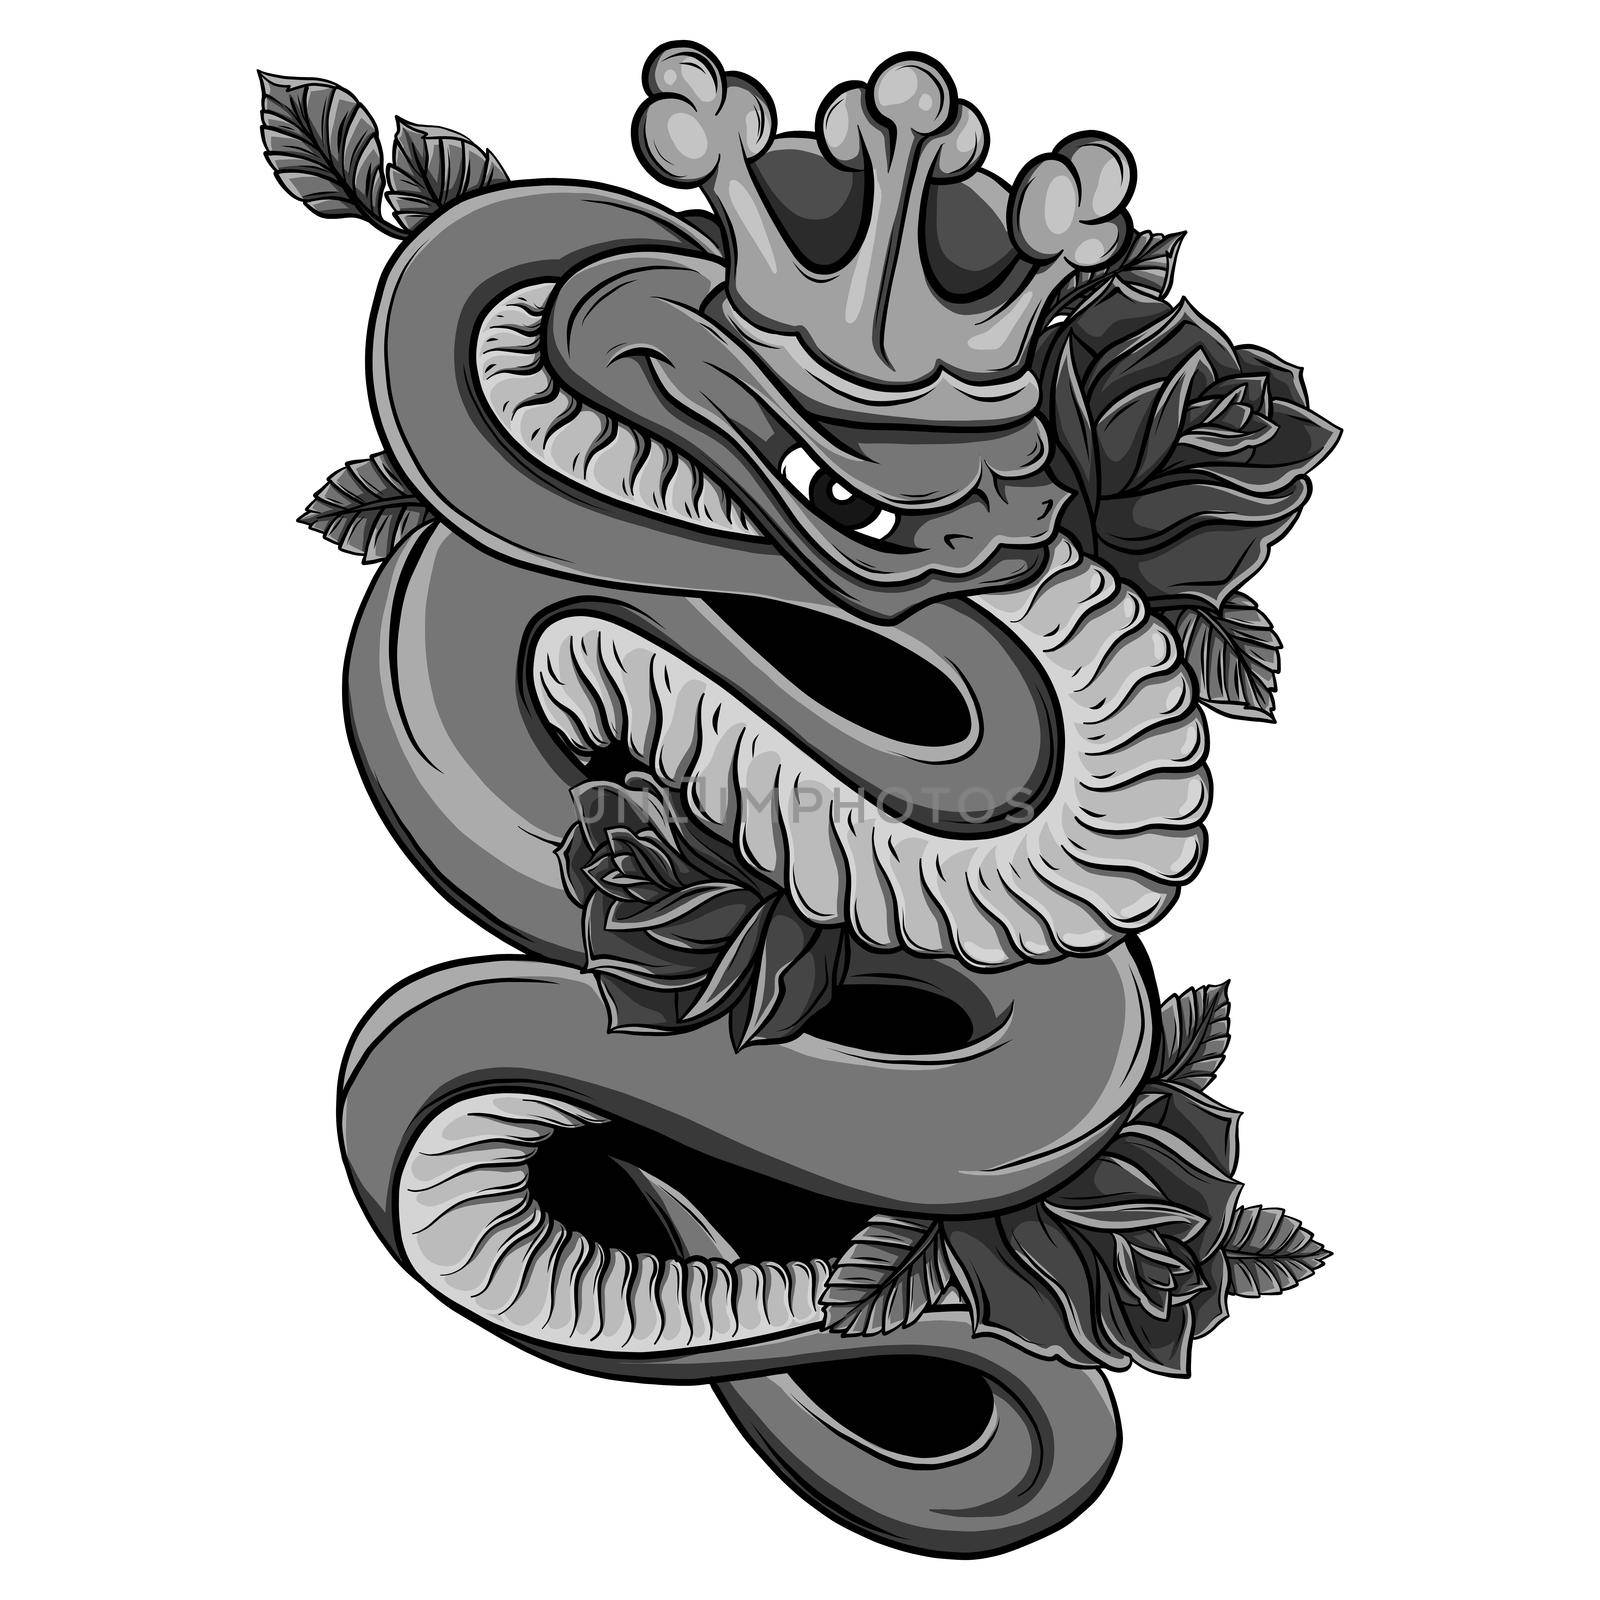 Viper snake illustration. Ink technique, good for poster, sticker